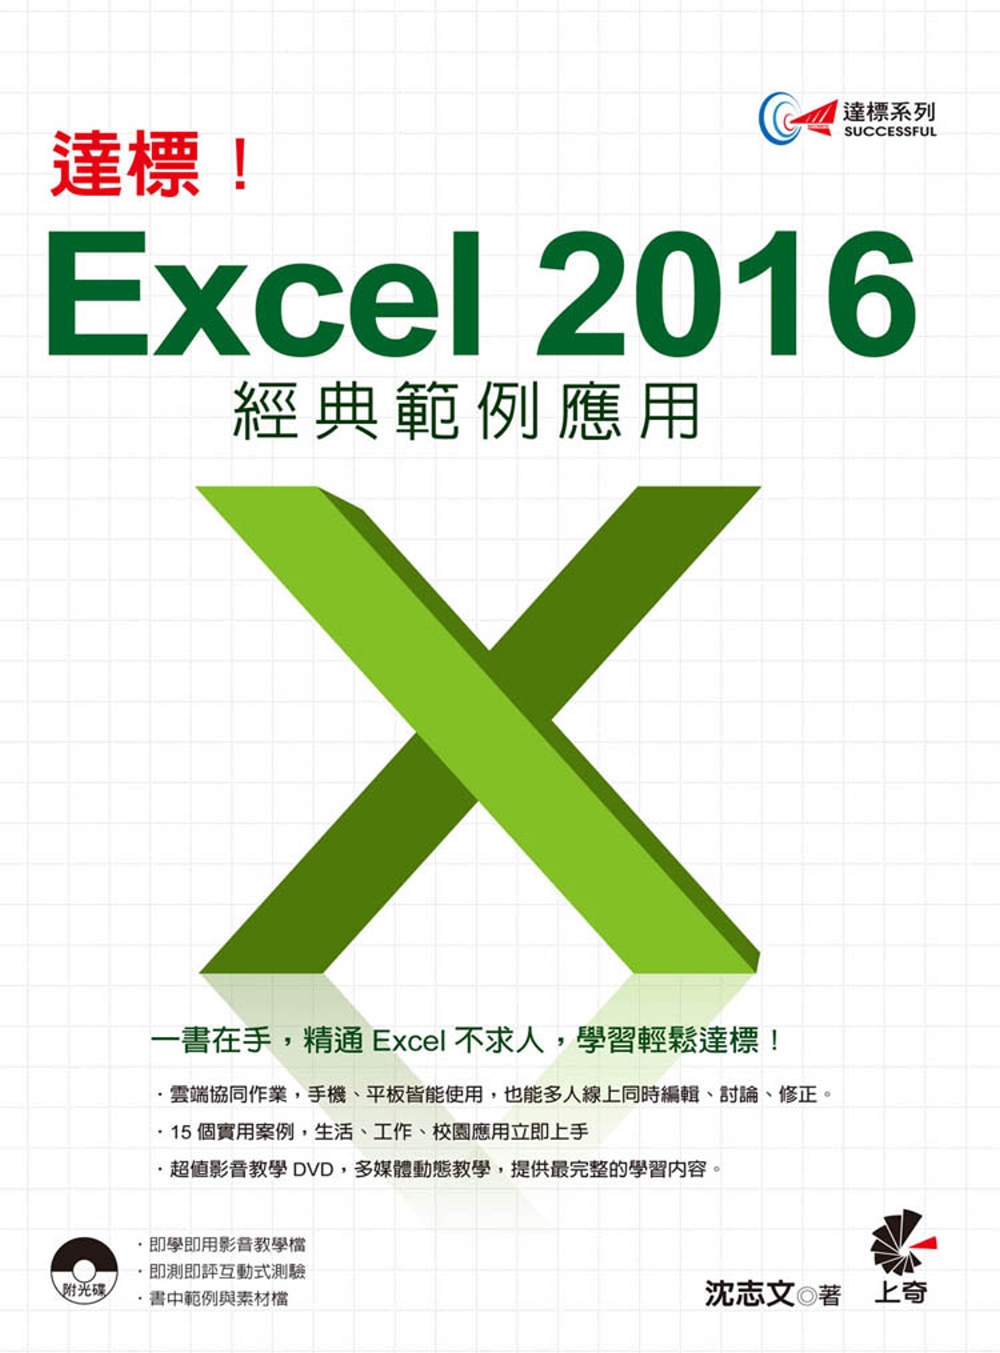 達標！Excel 2016 經典範例應用